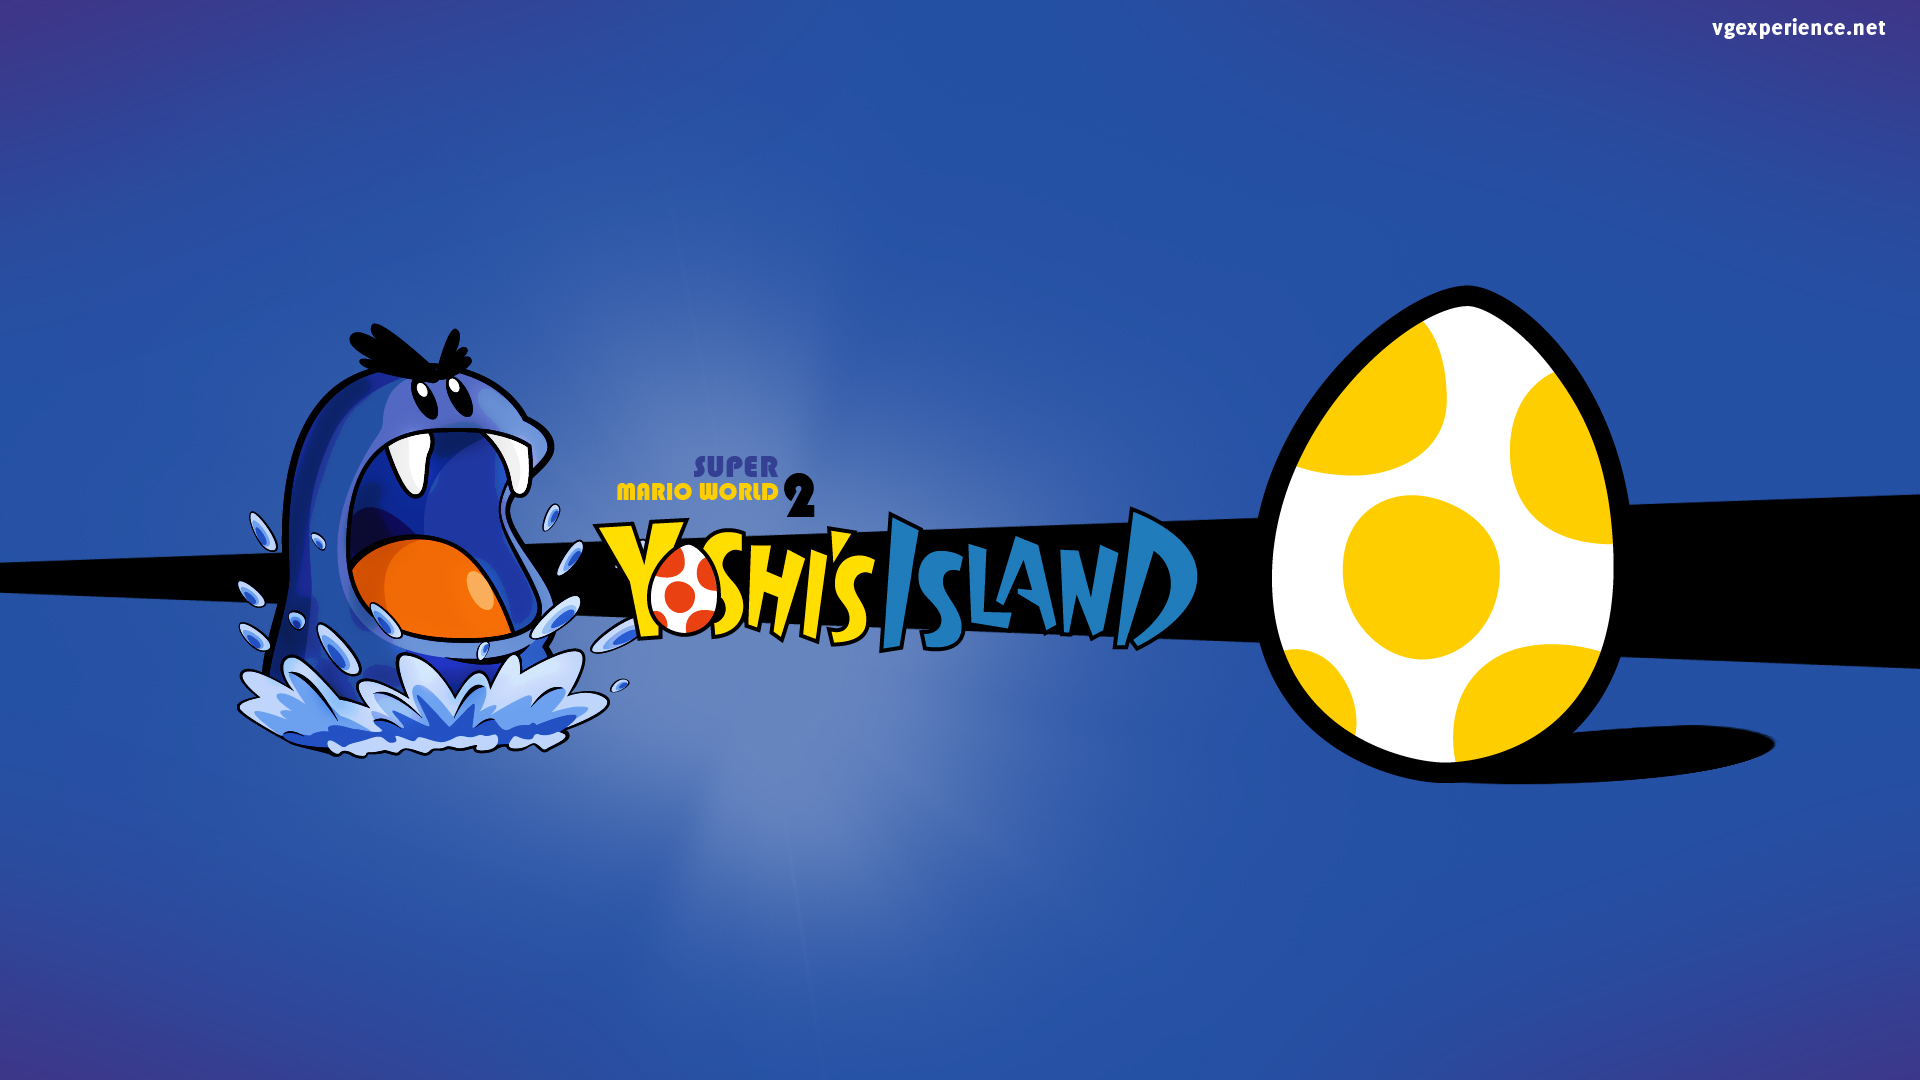 super mario world 2: yoshi's island, video game, mario